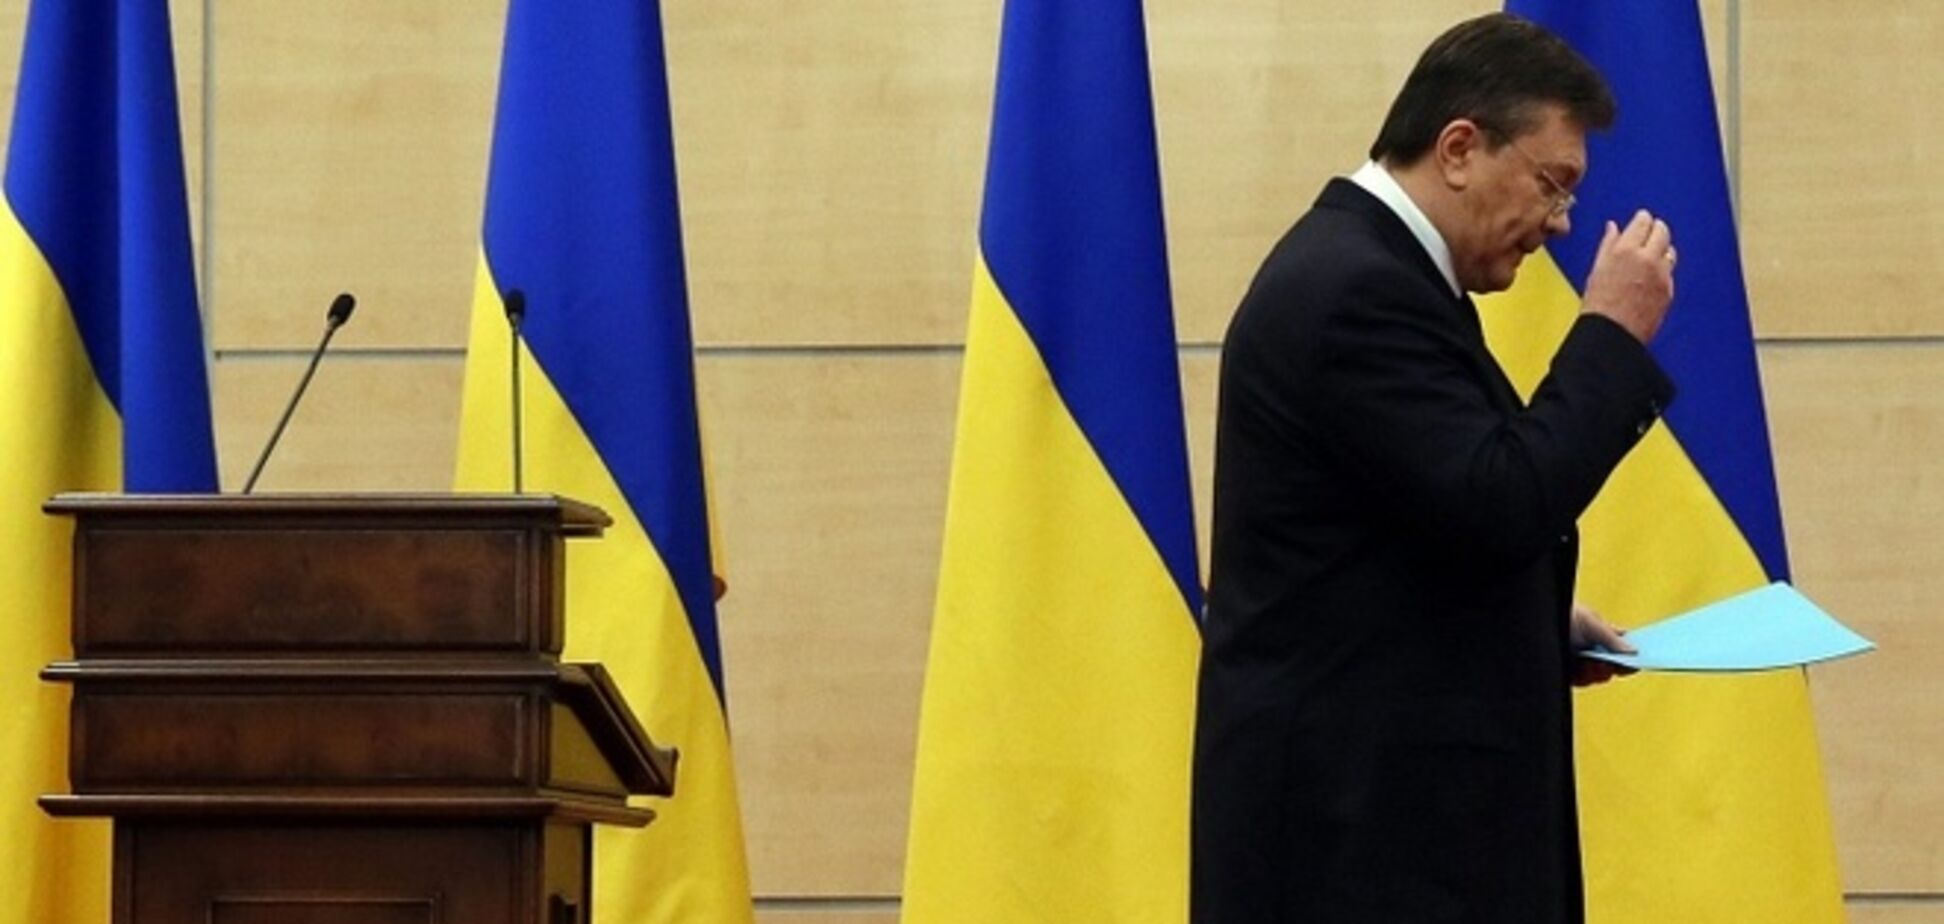 Федеральная миграционная служба России напомнила Януковичу, сколько гражданин Украины может находиться в РФ